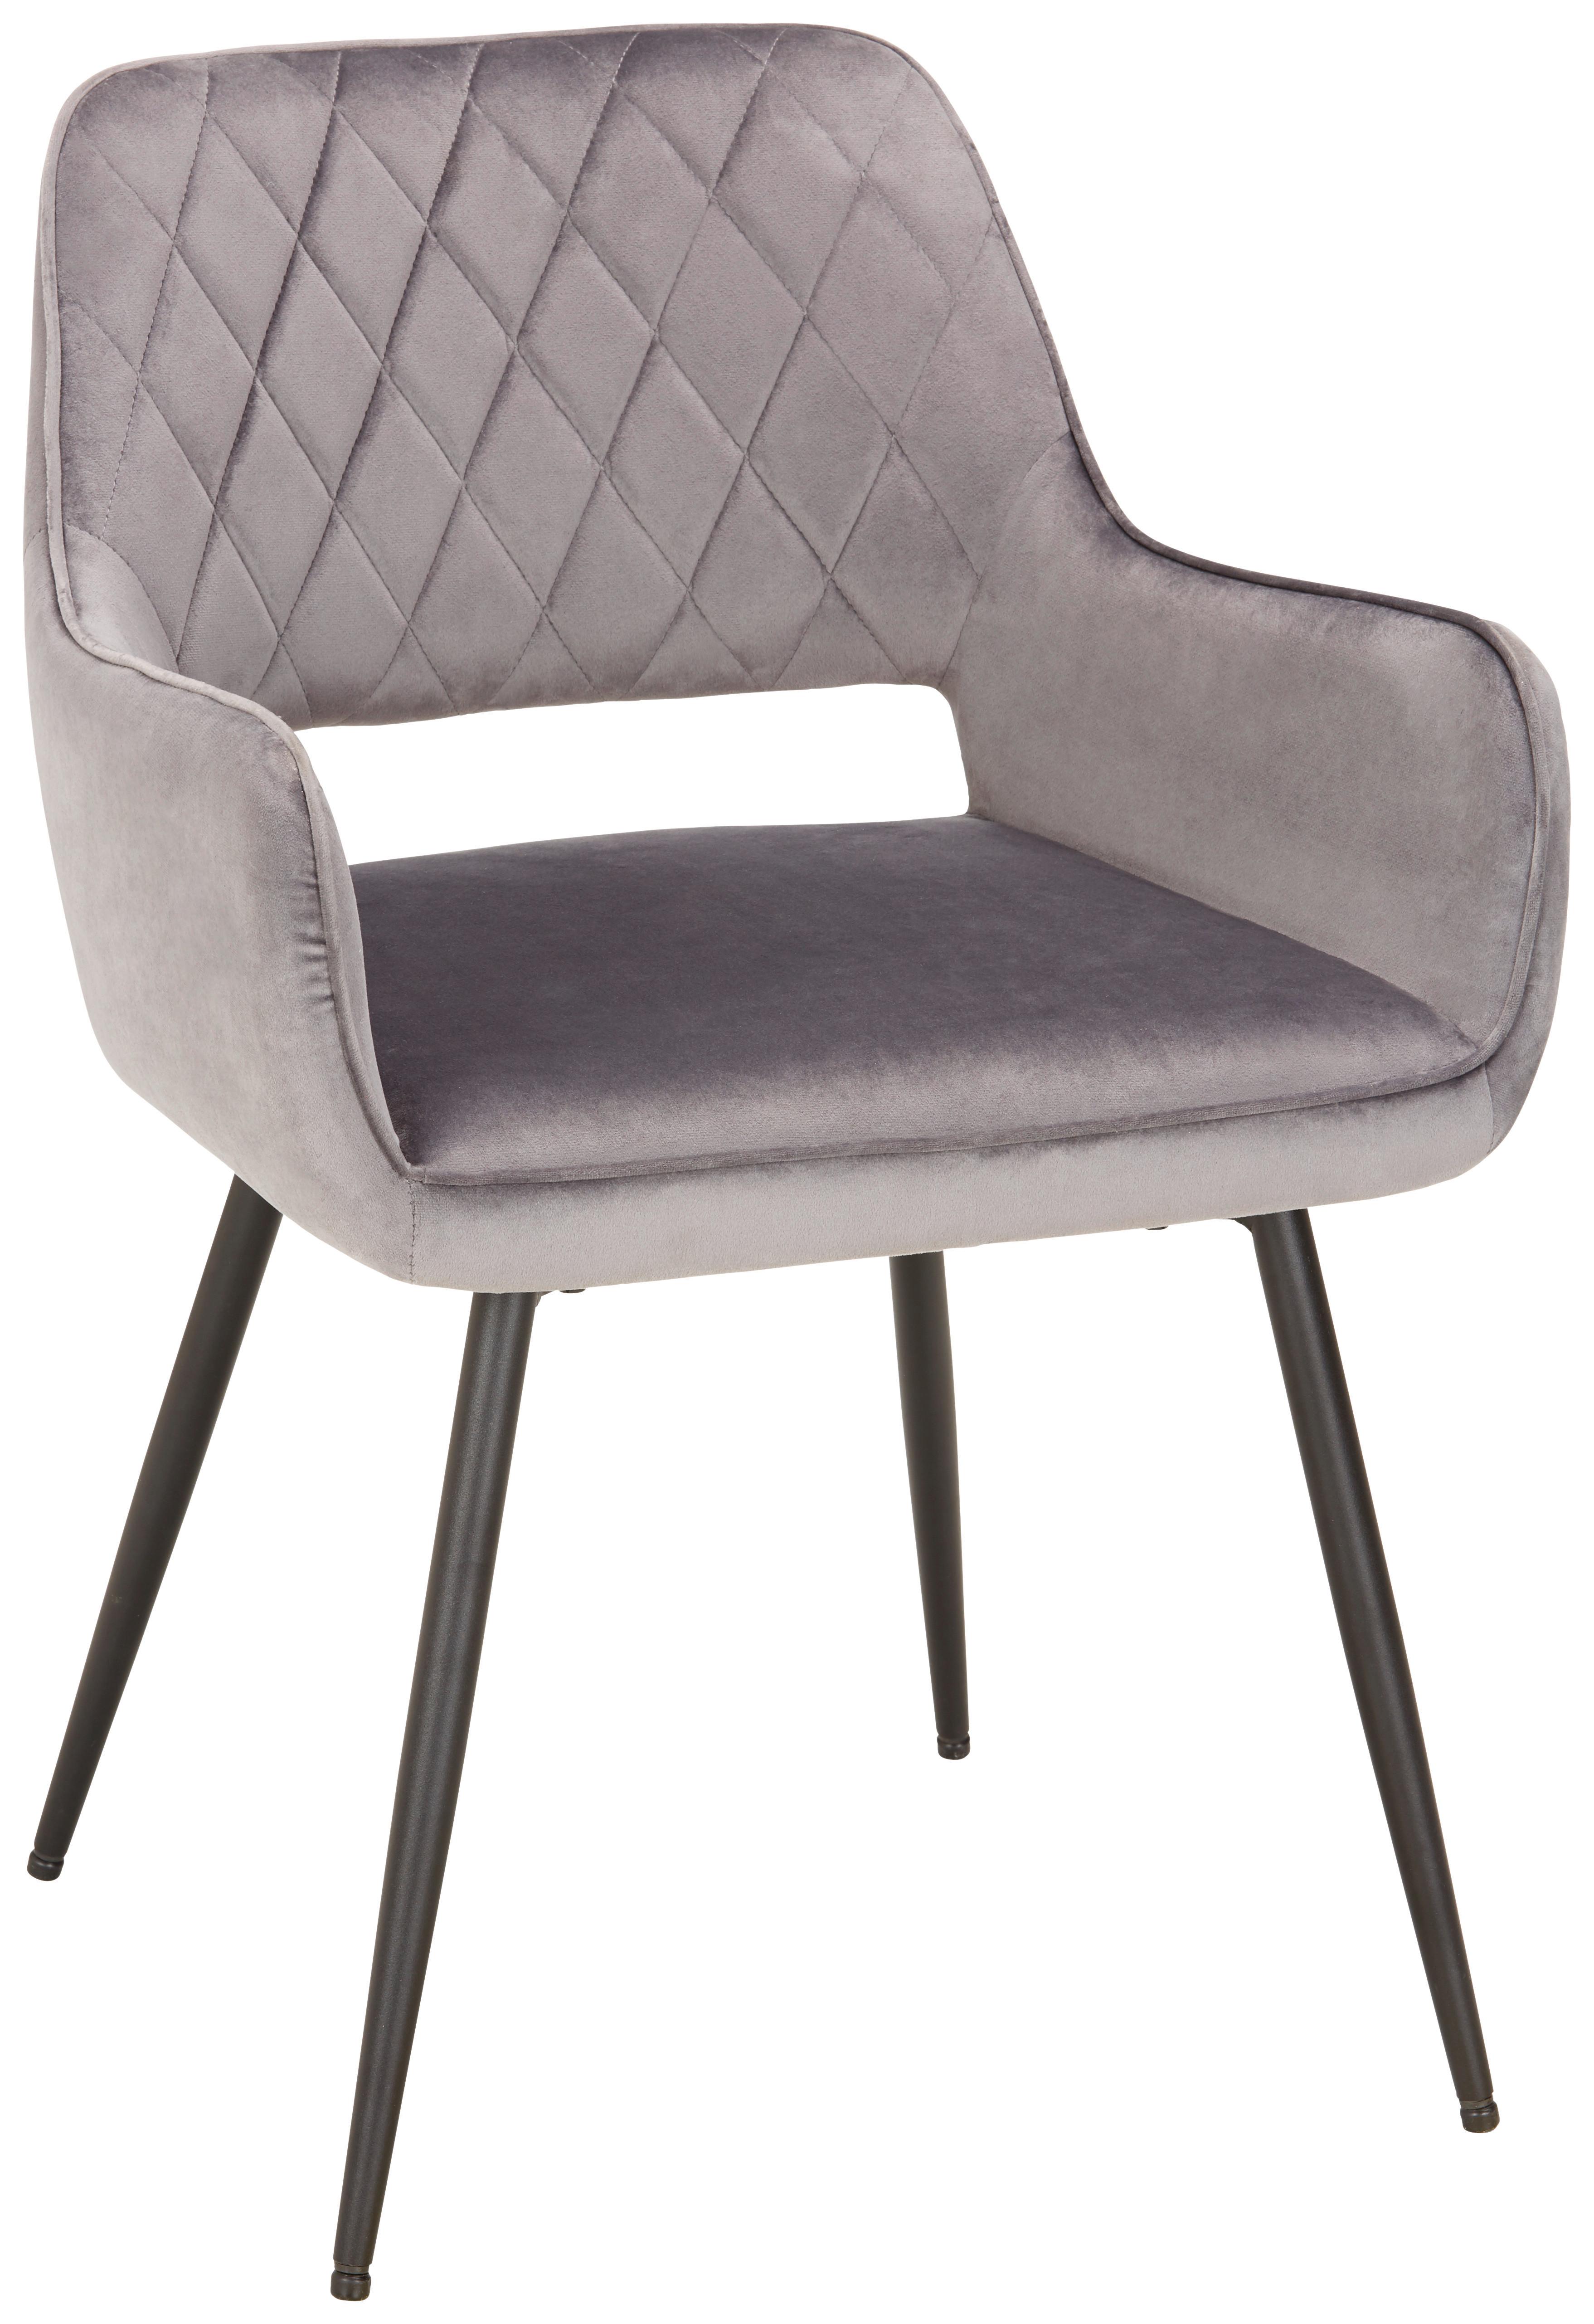 Stuhl in Grau - Schwarz/Grau, MODERN, Holz/Textil (55/80,5/59,5cm) - Based